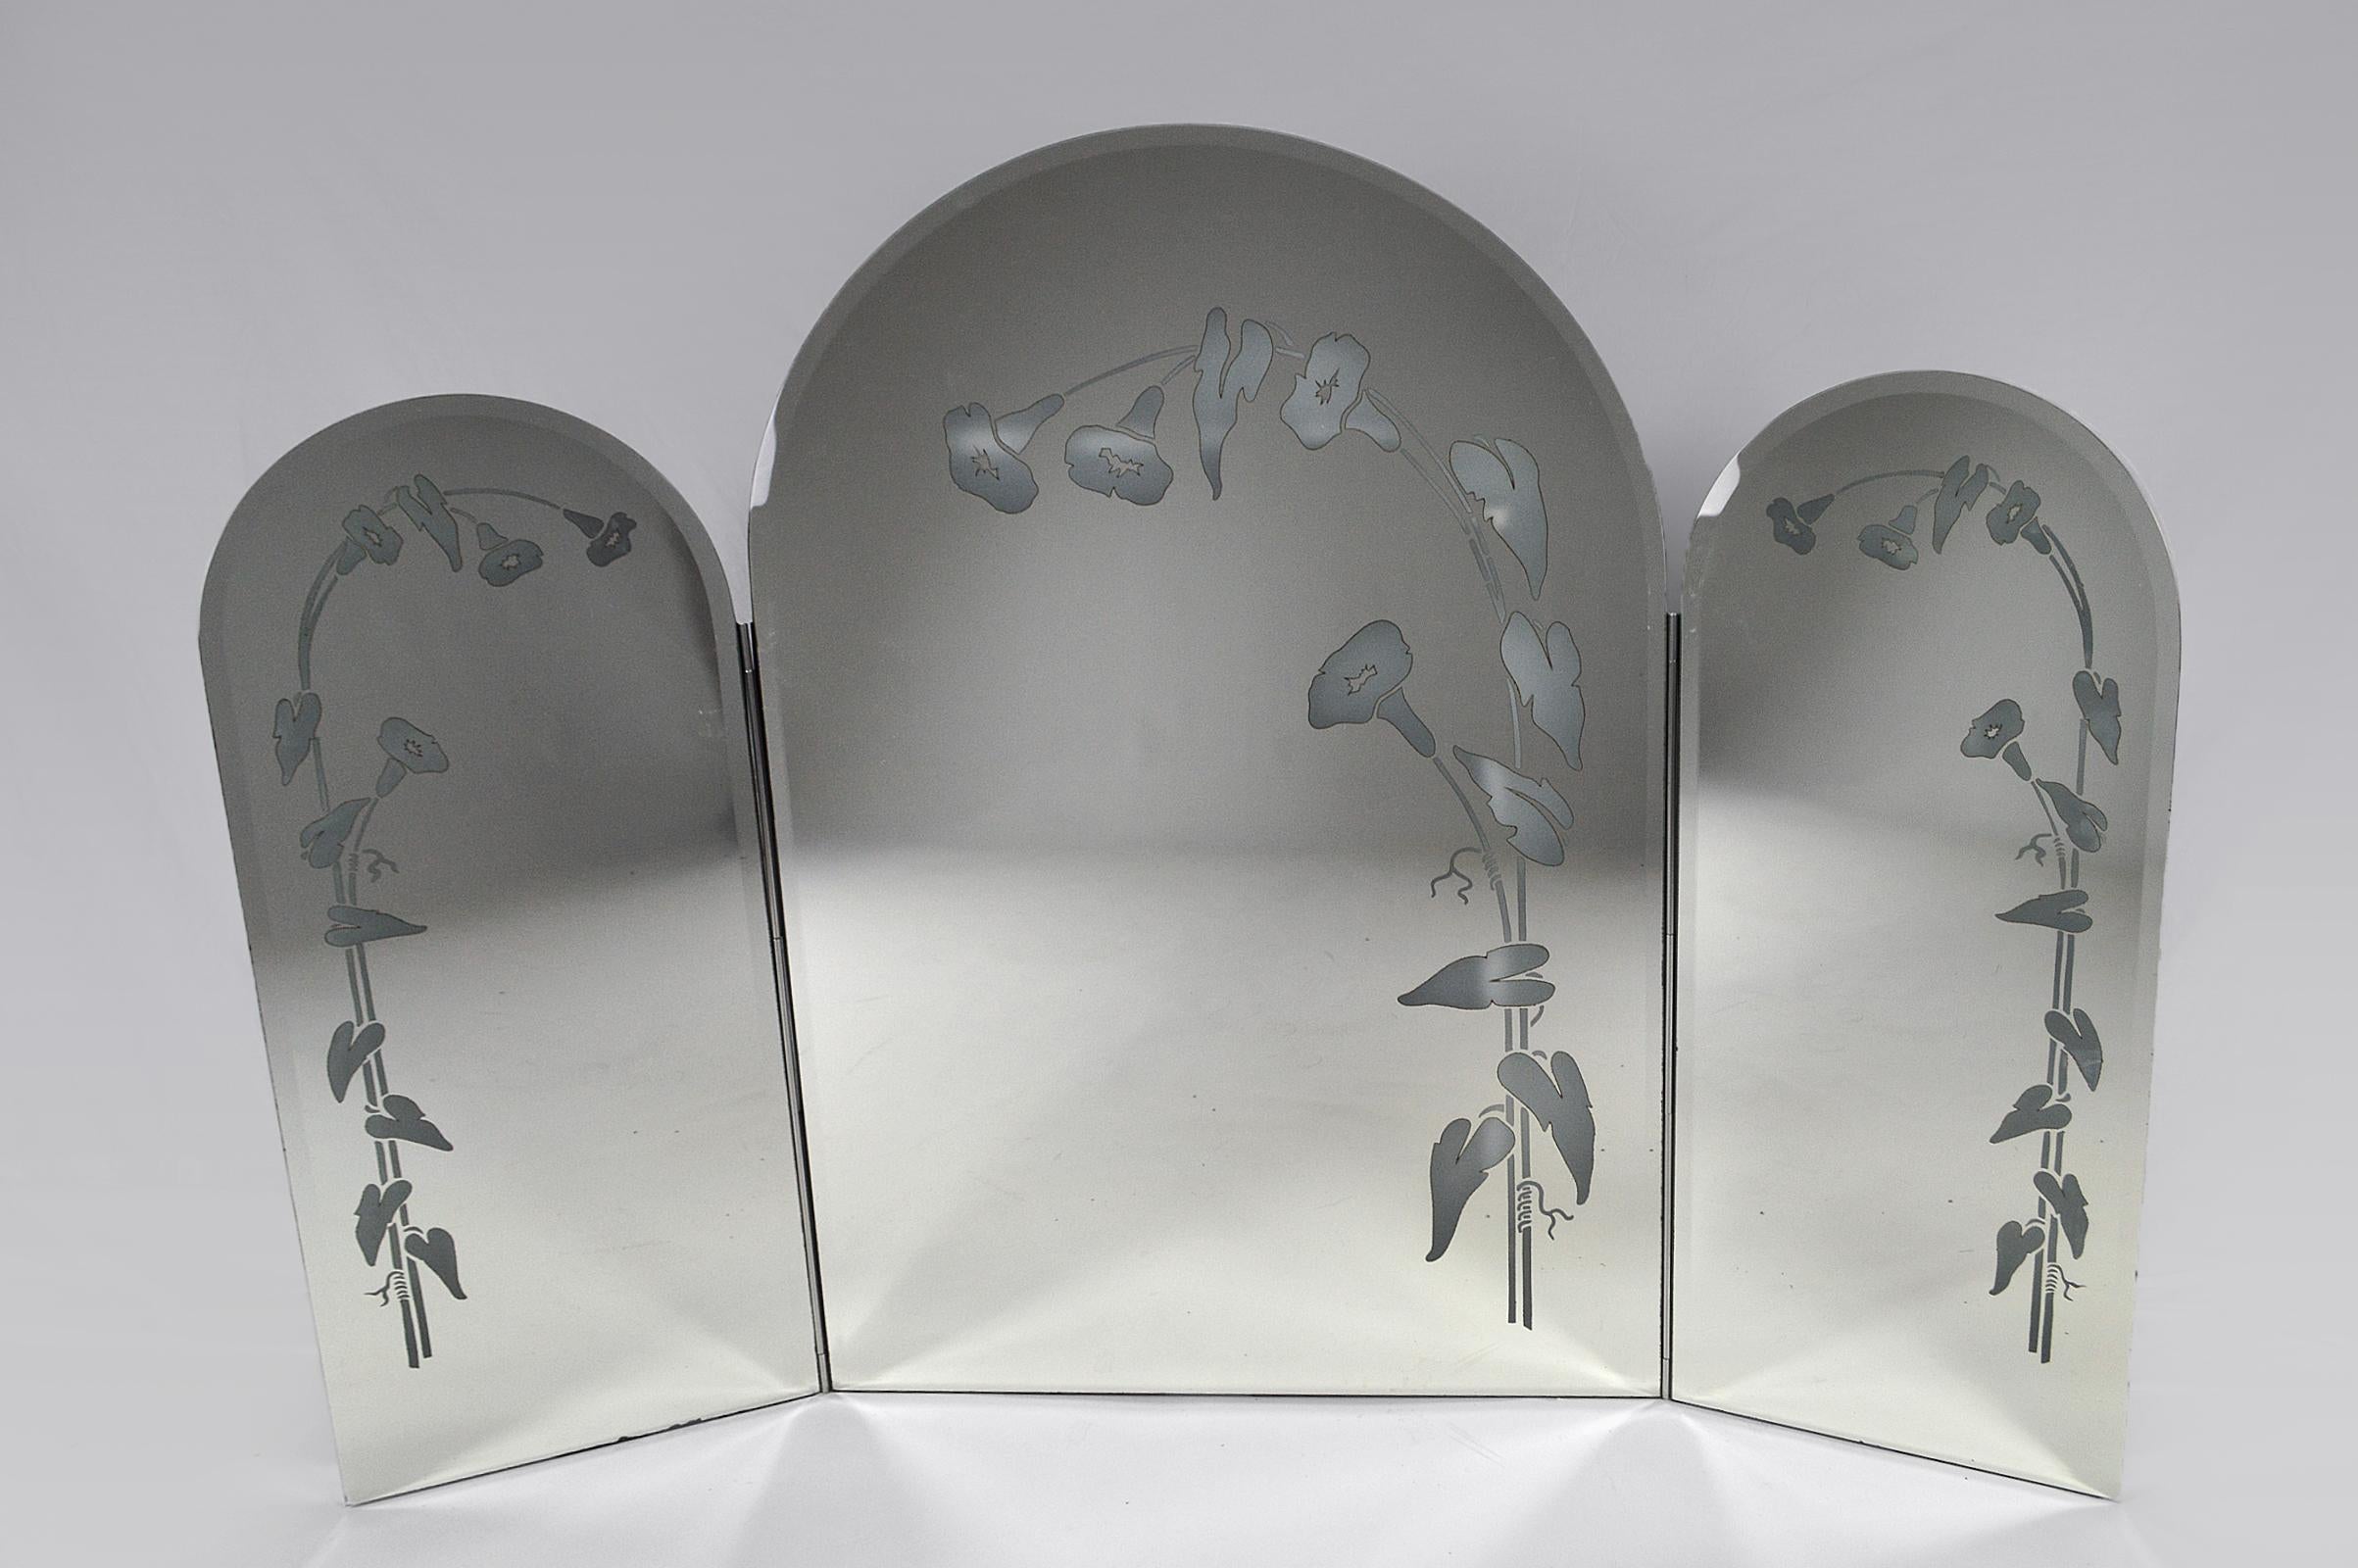 Großer Triptychon-Spiegel mit abgeschrägtem Glas und mit beleuchteten Blumenmotiven verziert.
Verchromtes Metallgehäuse.

Art Deco und Jugendstil inspiriert, Italien, ca. 1970-1980.

In ausgezeichnetem Zustand, Elektrizität